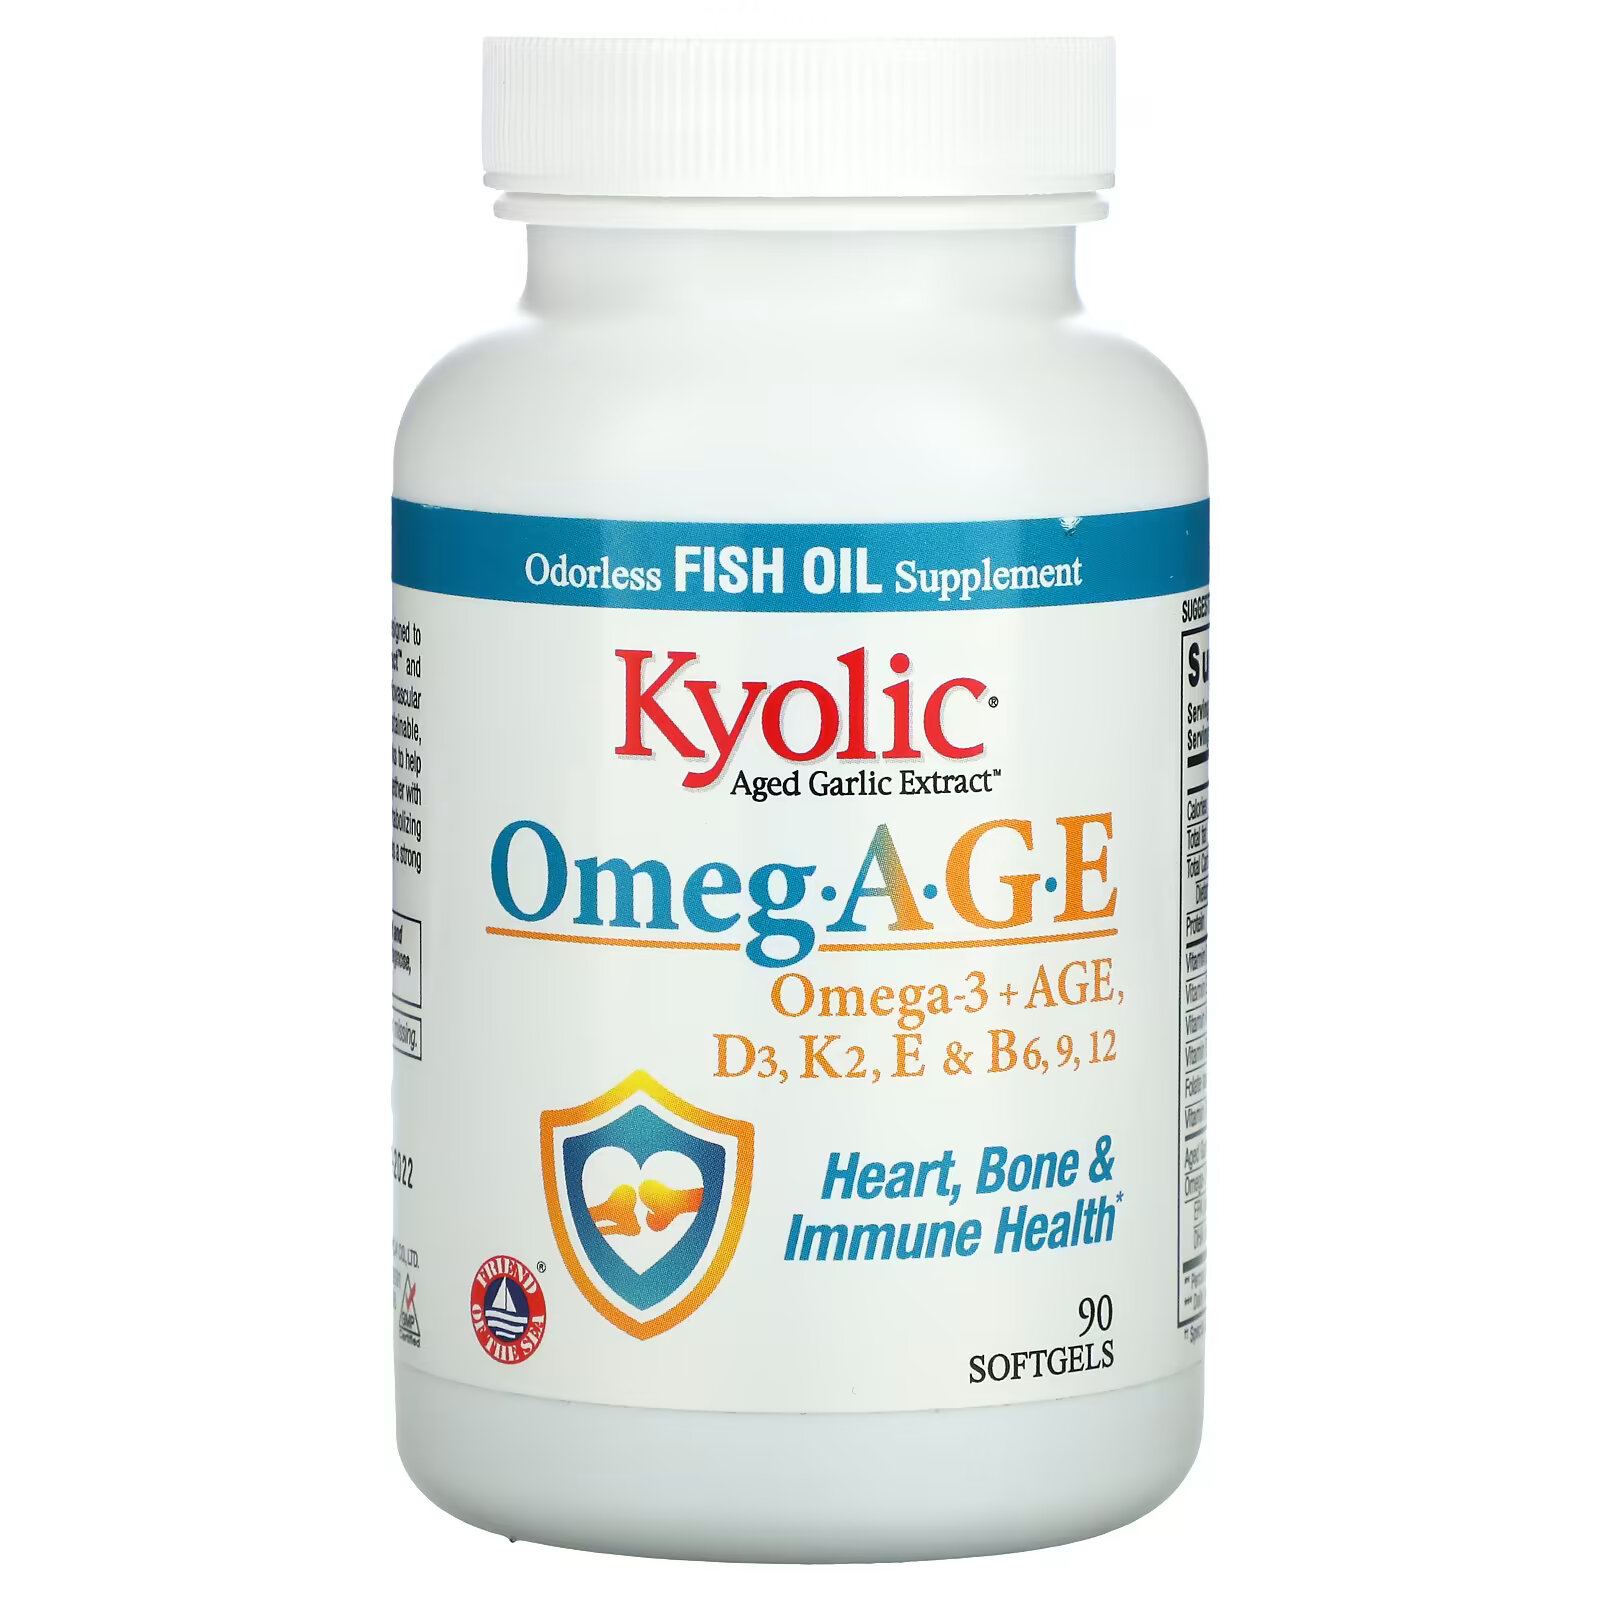 Kyolic, Omeg.AGE, омега-3 и старше, D3, K2, E и B6, 9, 12, Heart, Bone & Immune Health, 90 мягких таблеток